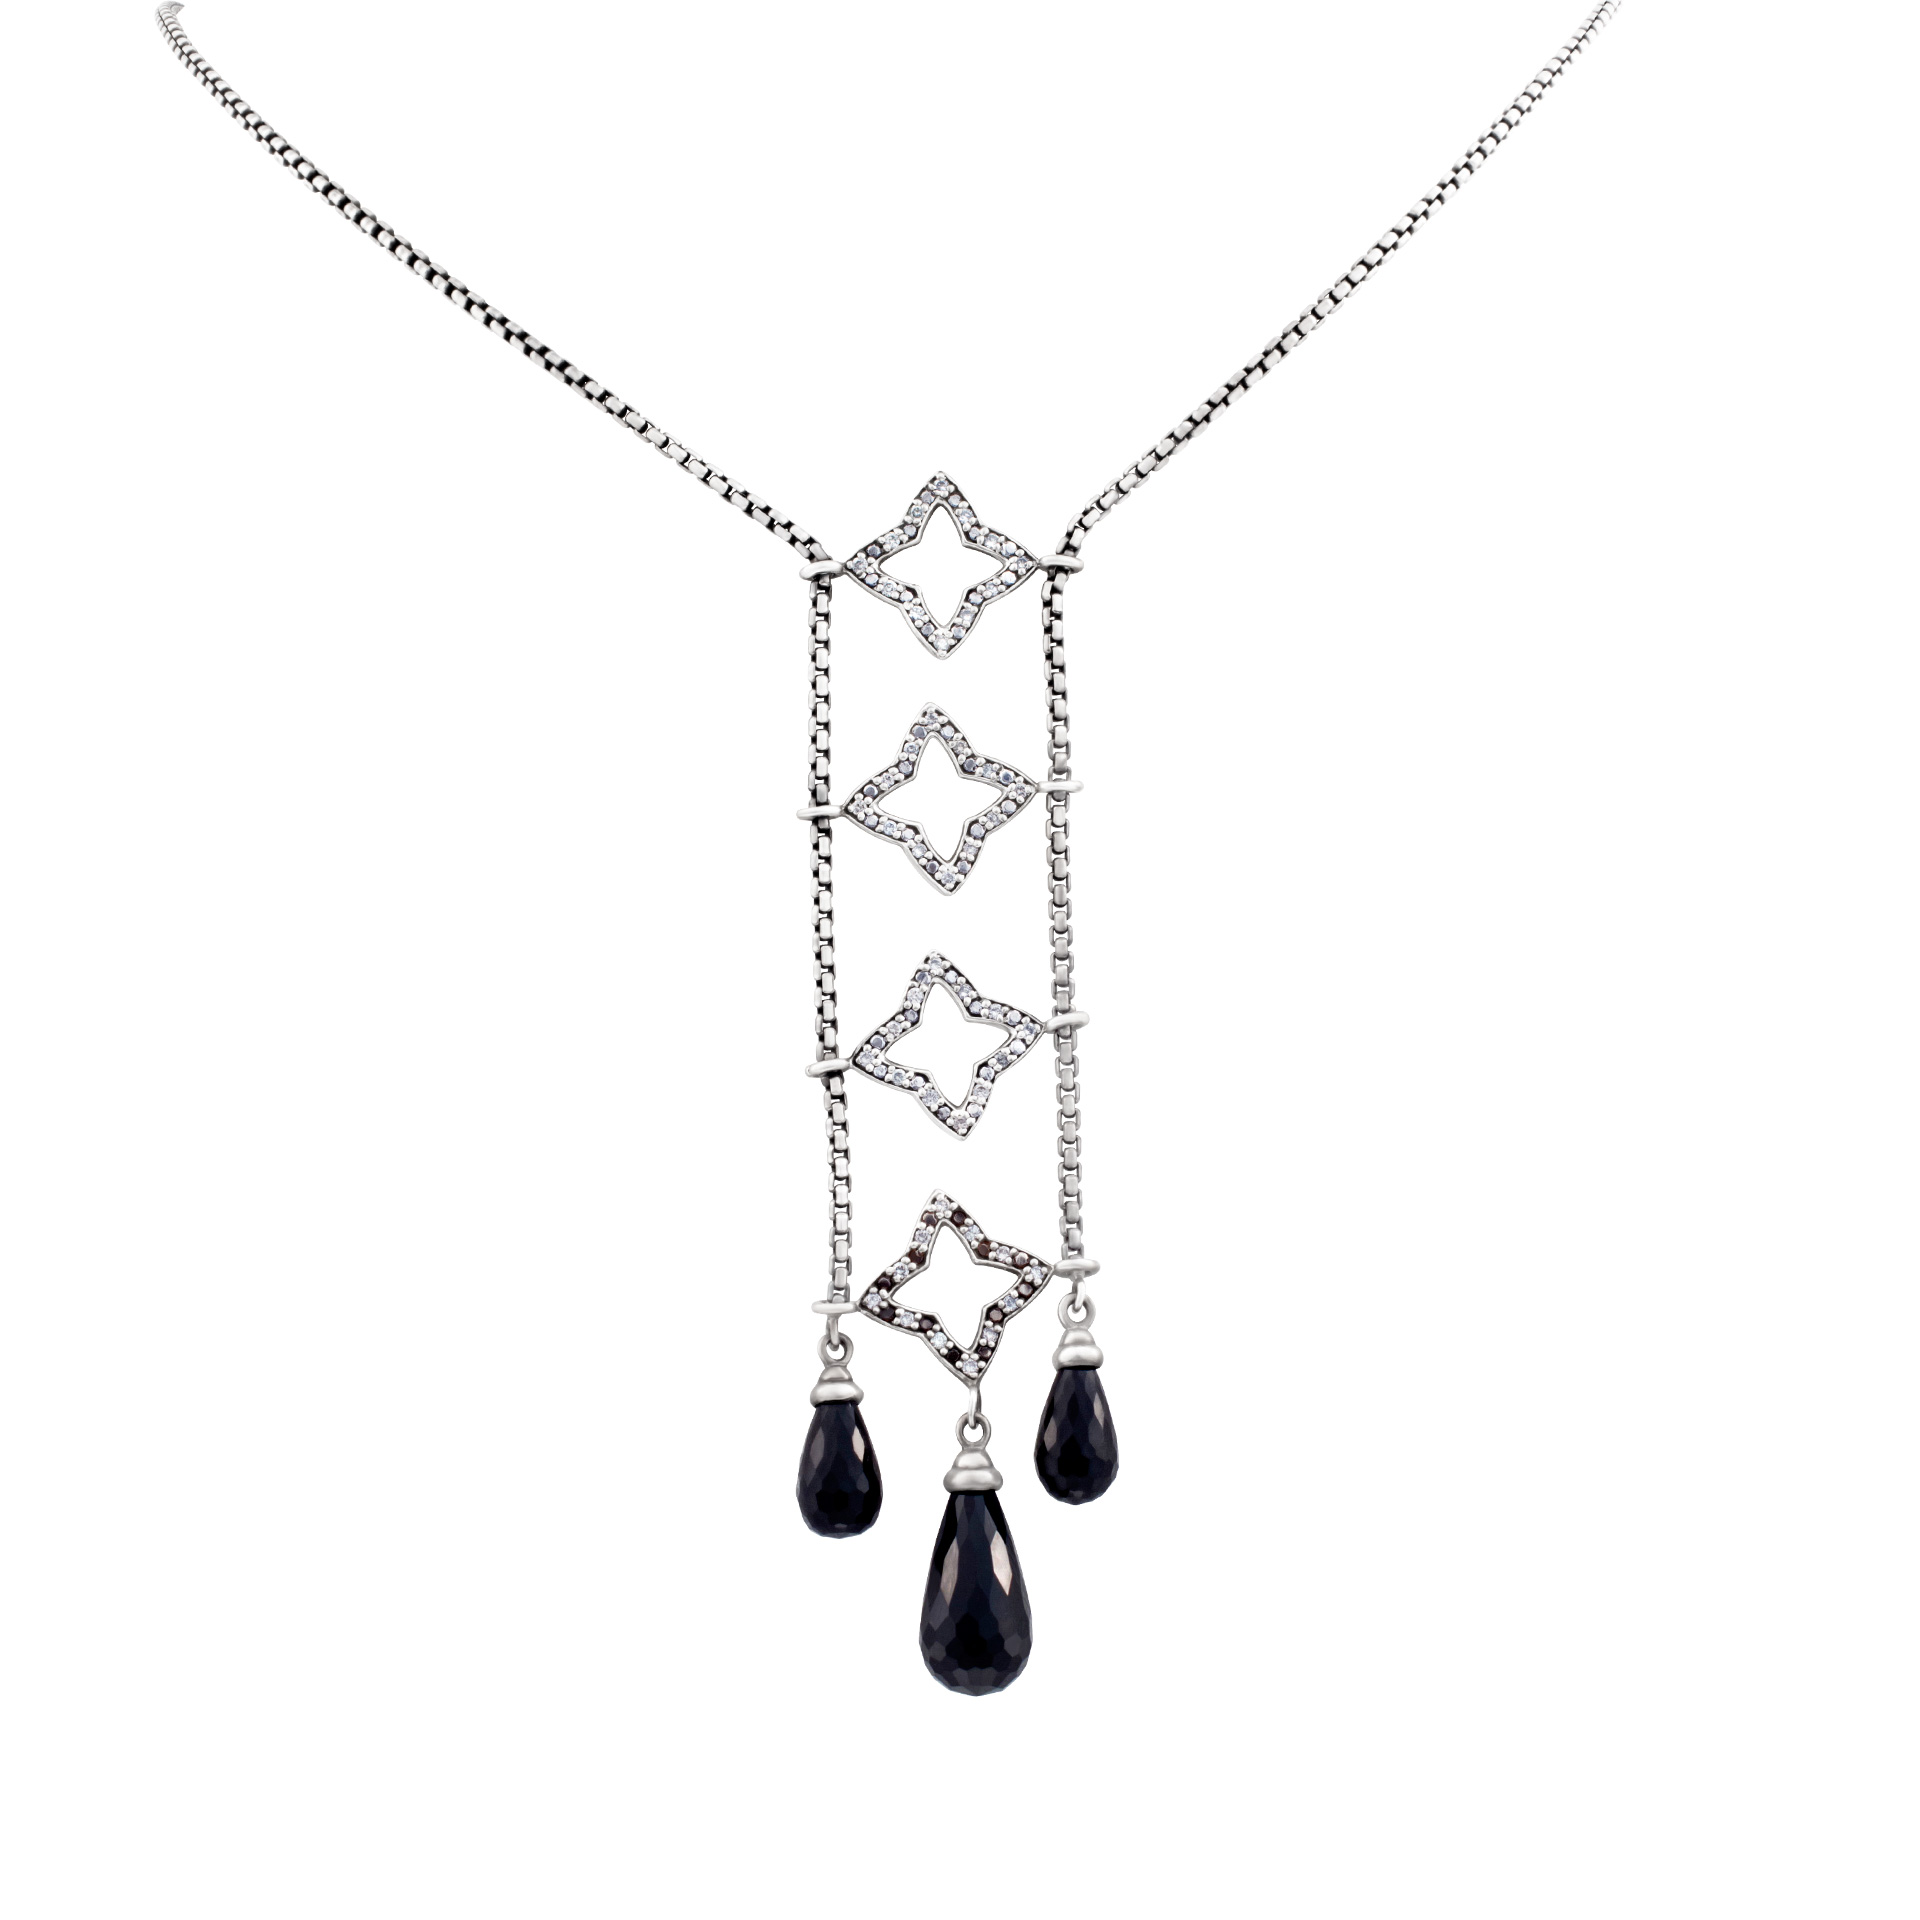 David Yurman necklace with diamond stars image 1